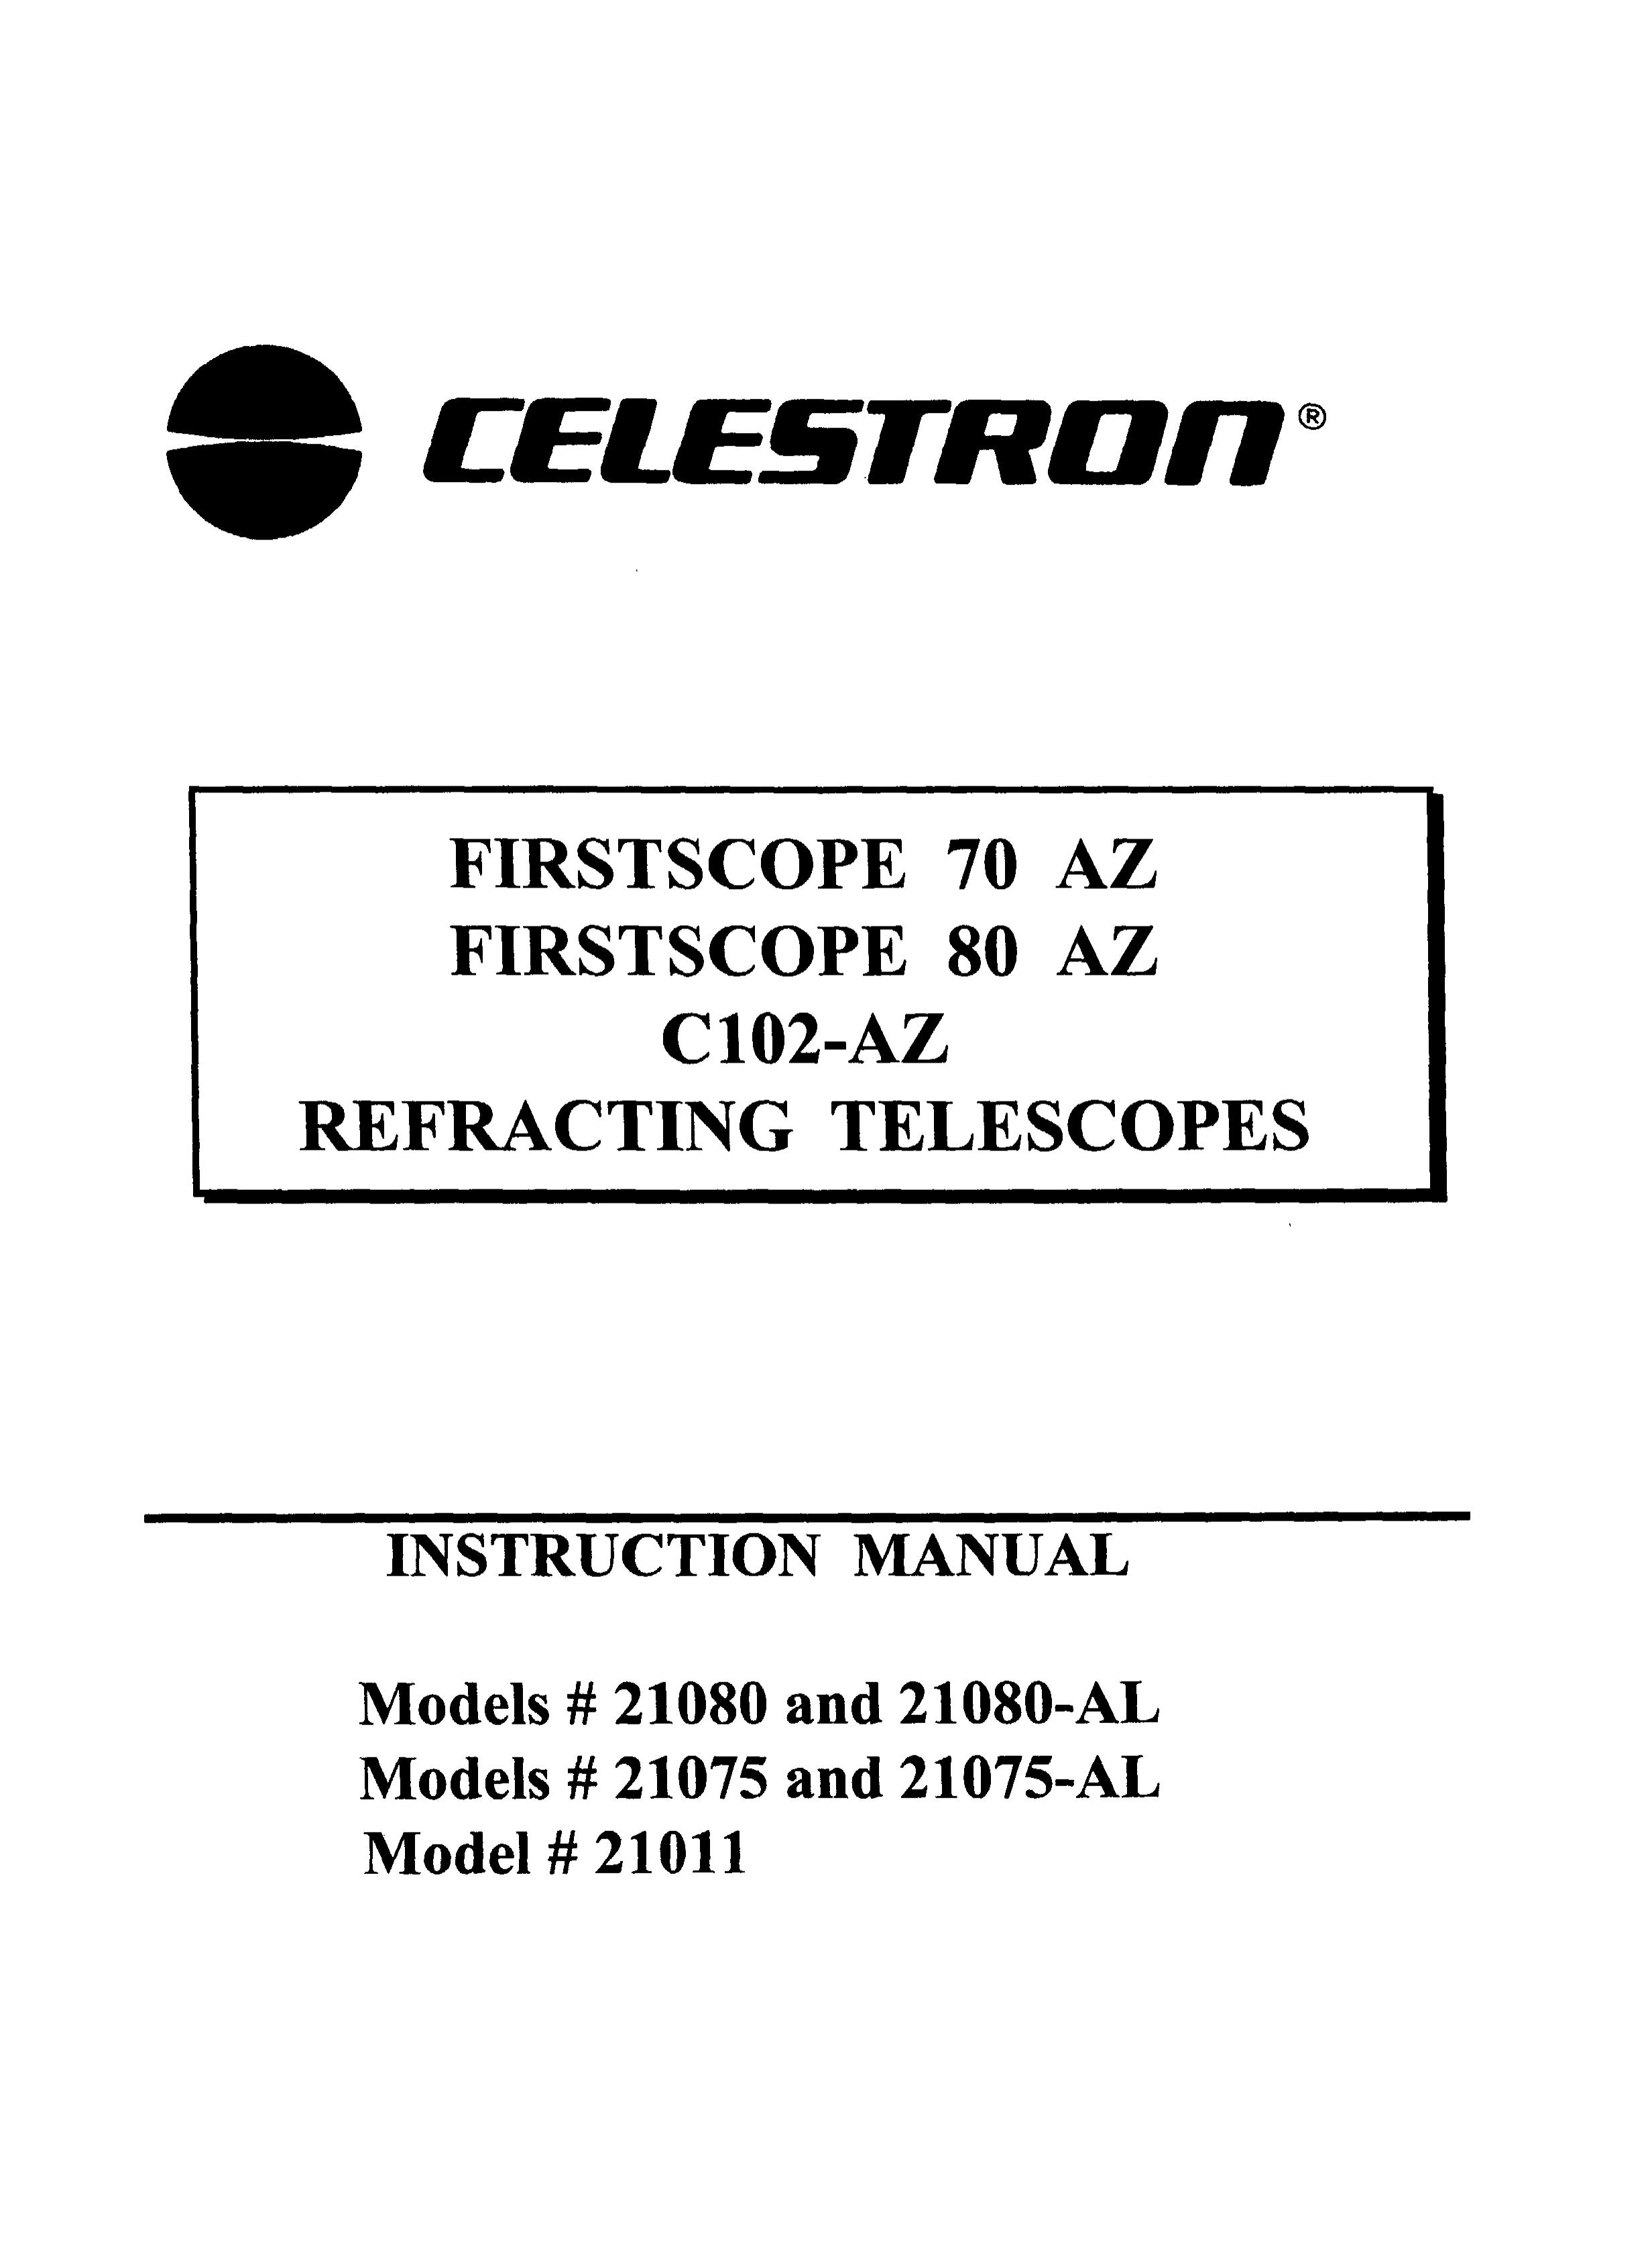 Celestron 21080 Telescope User Manual